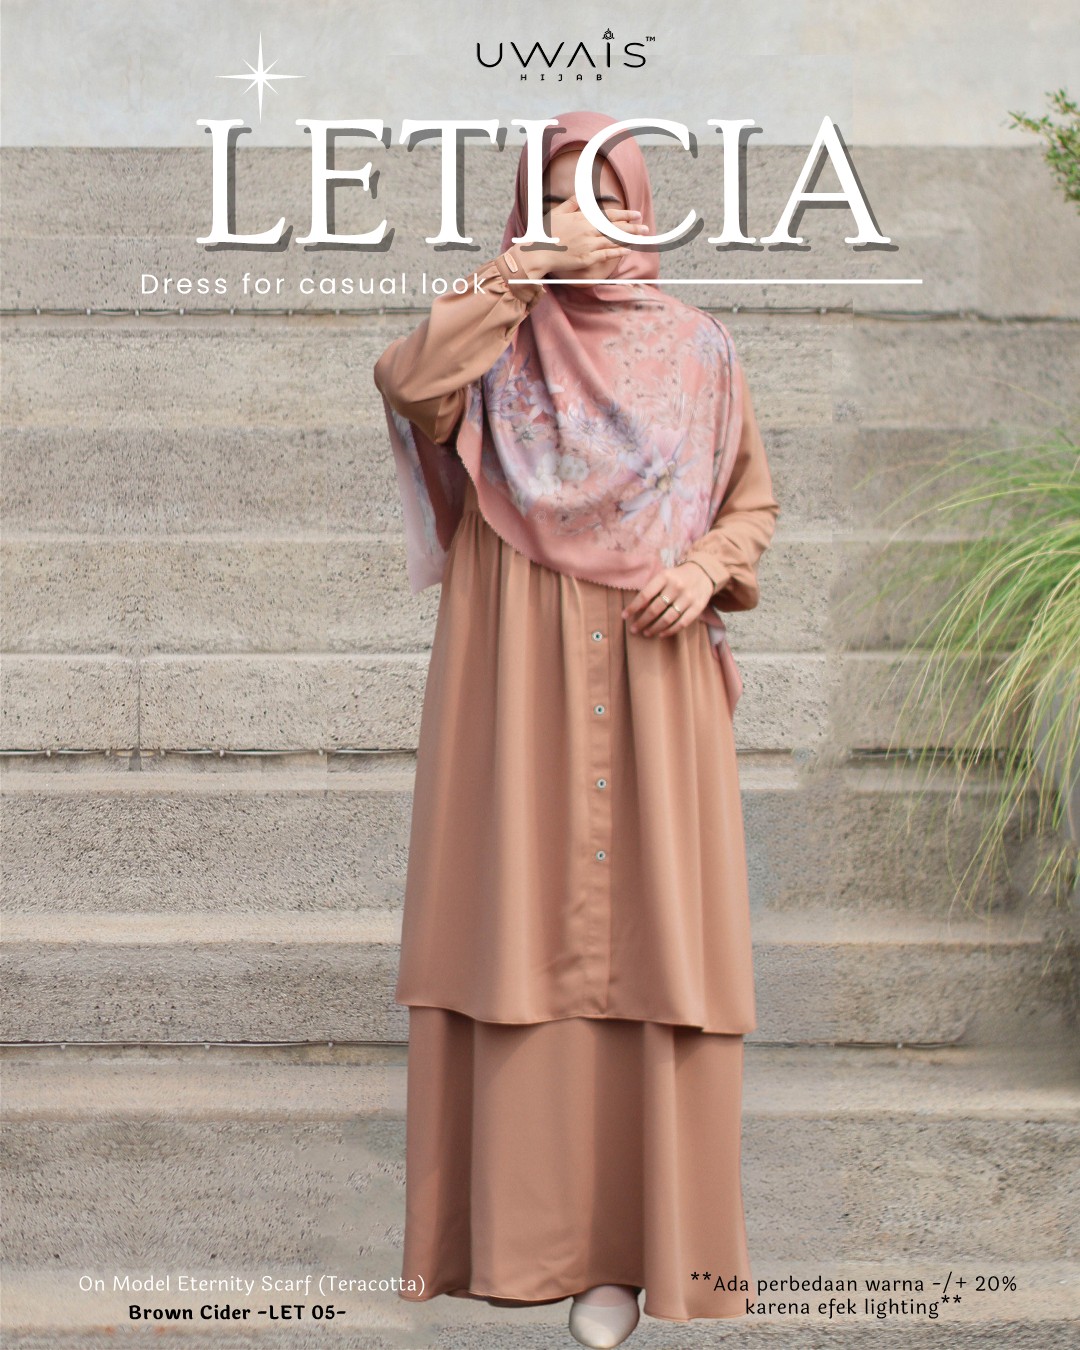 Katalog Leticia & Leanor (1)_17